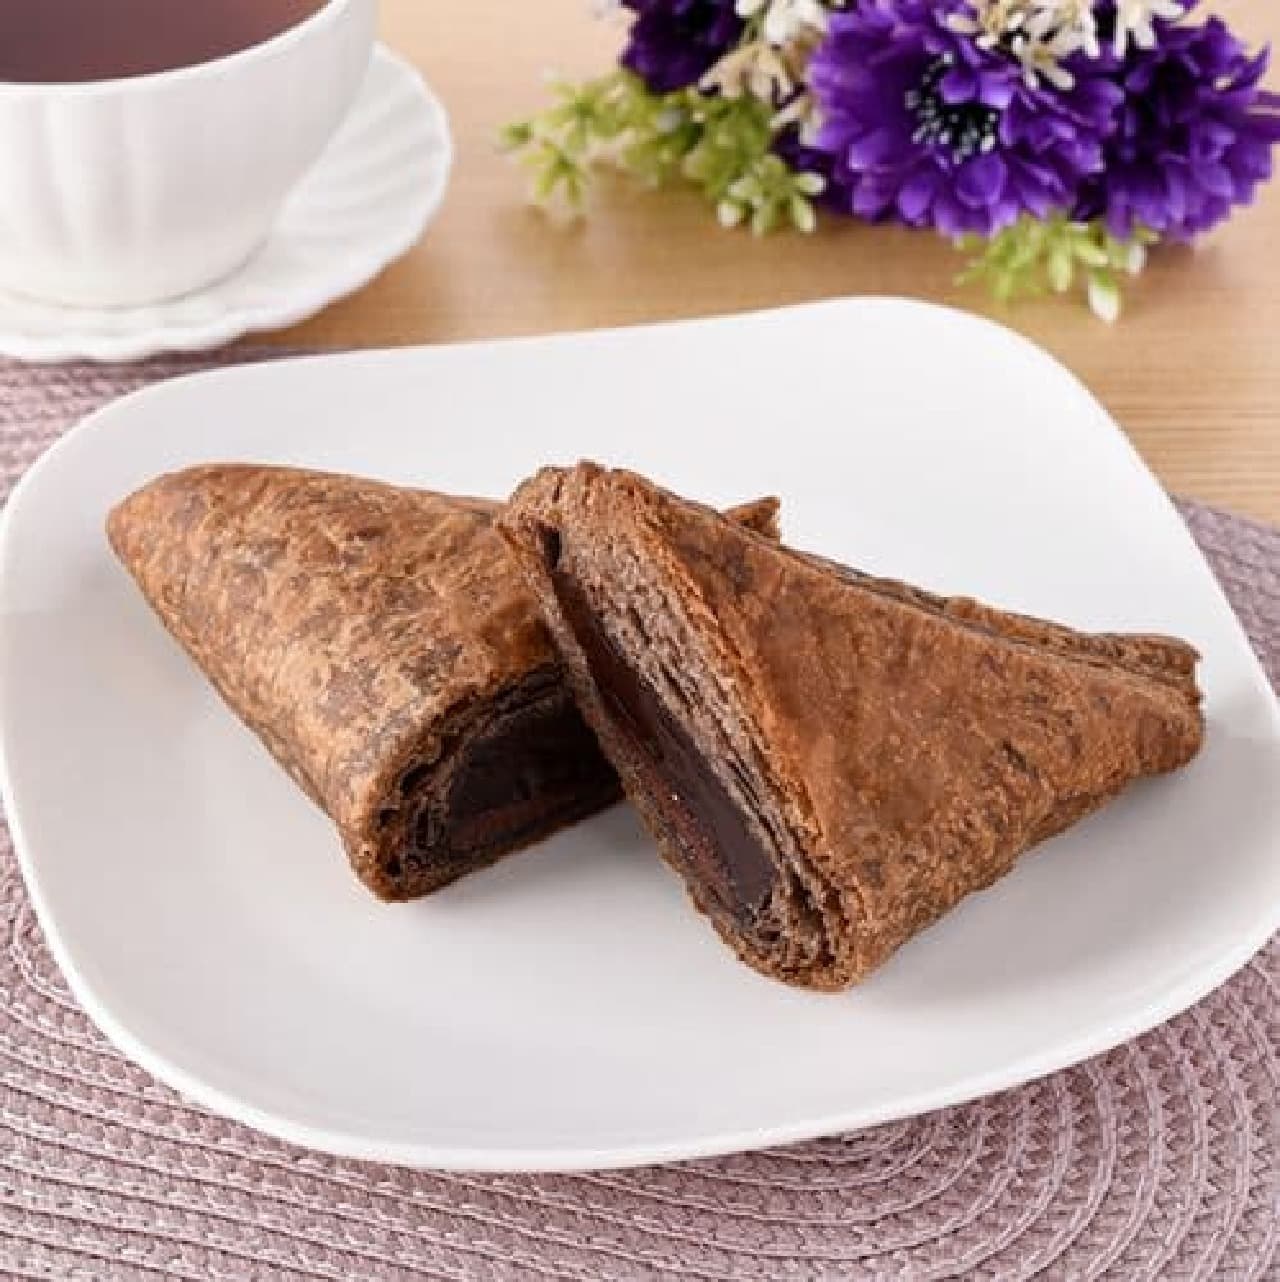 FamilyMart "Torori Chocolate Triangle Choco Pie"